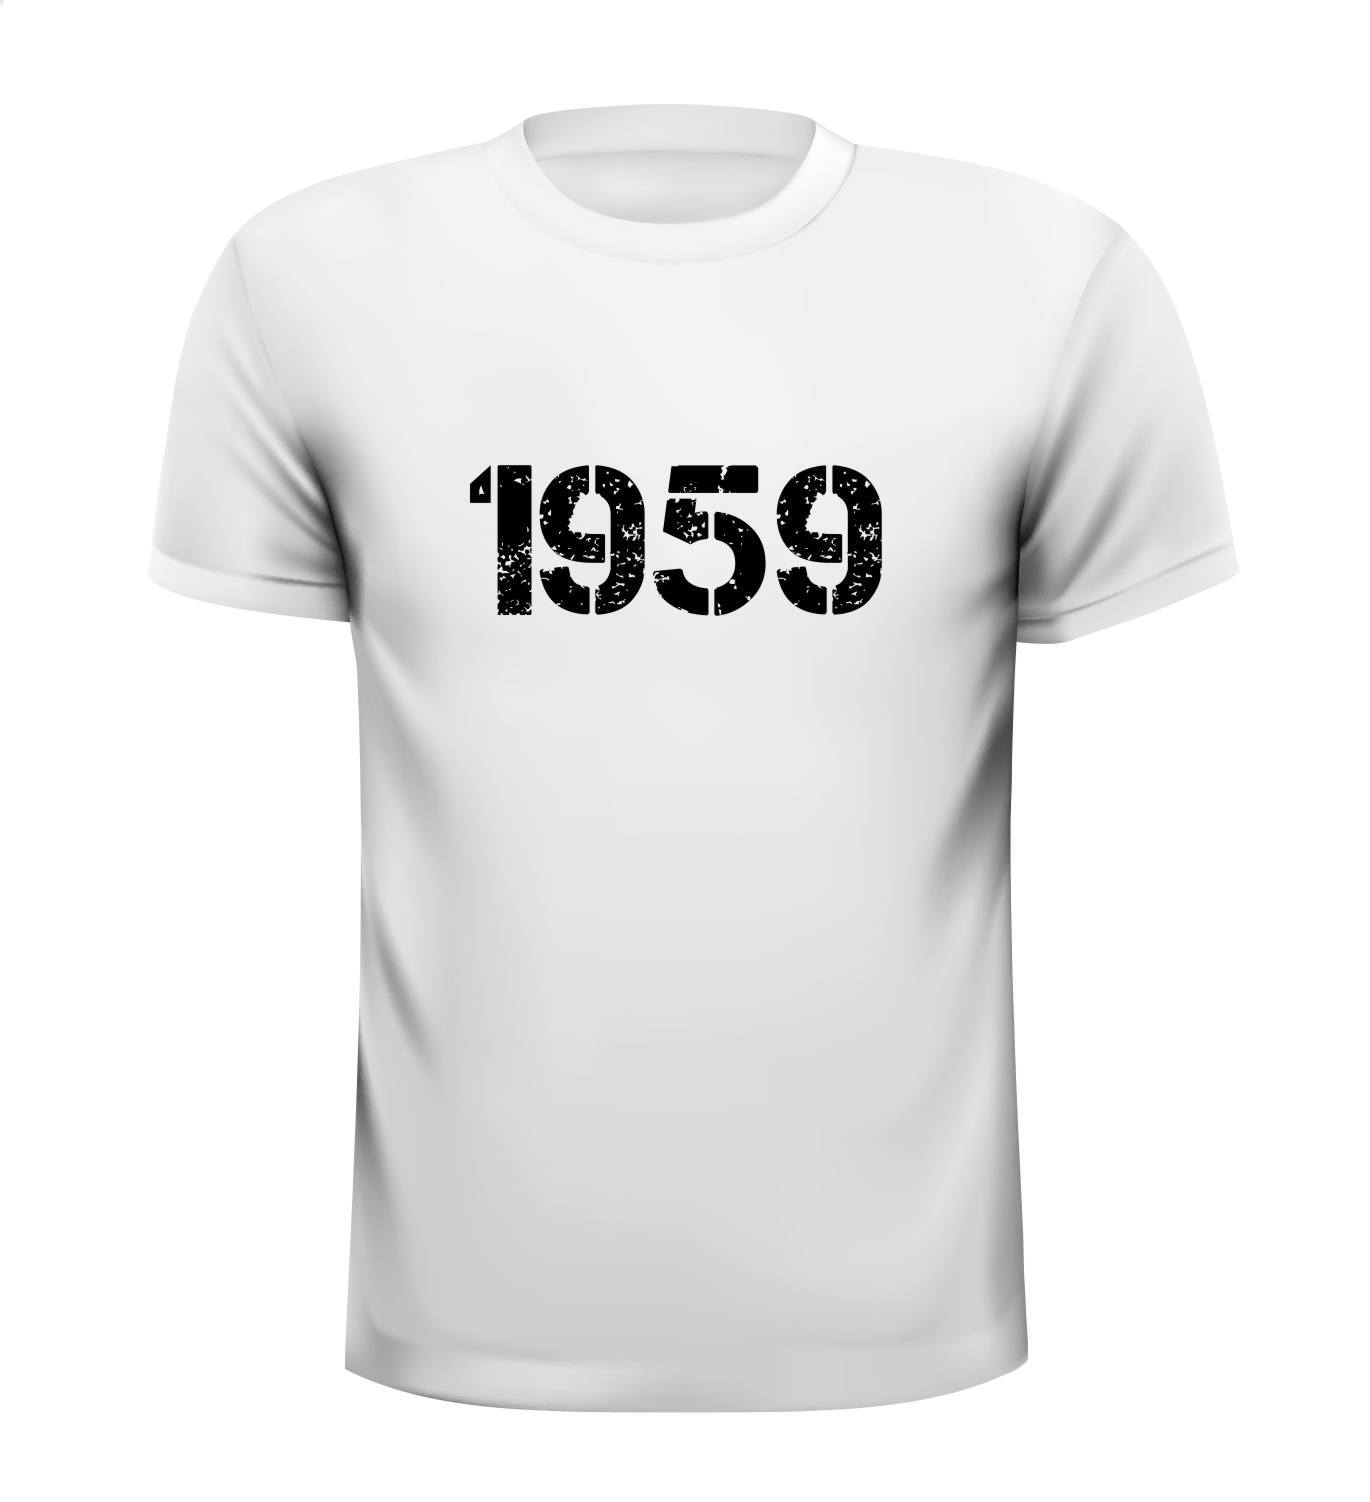 1959 t-shirt